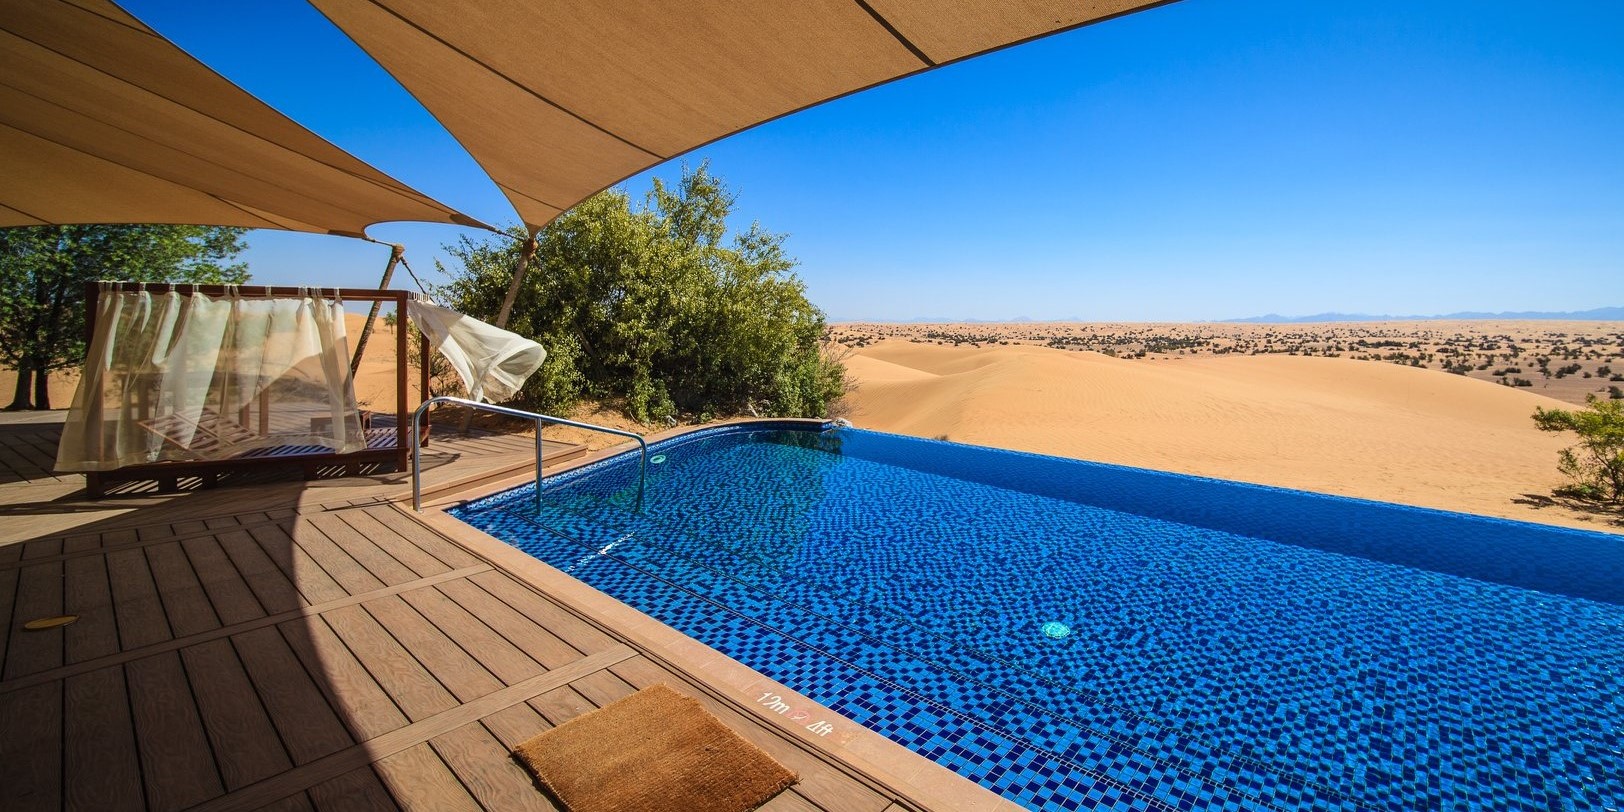 Al Maha Desert Resort & Spa - Apply Dubai Visa